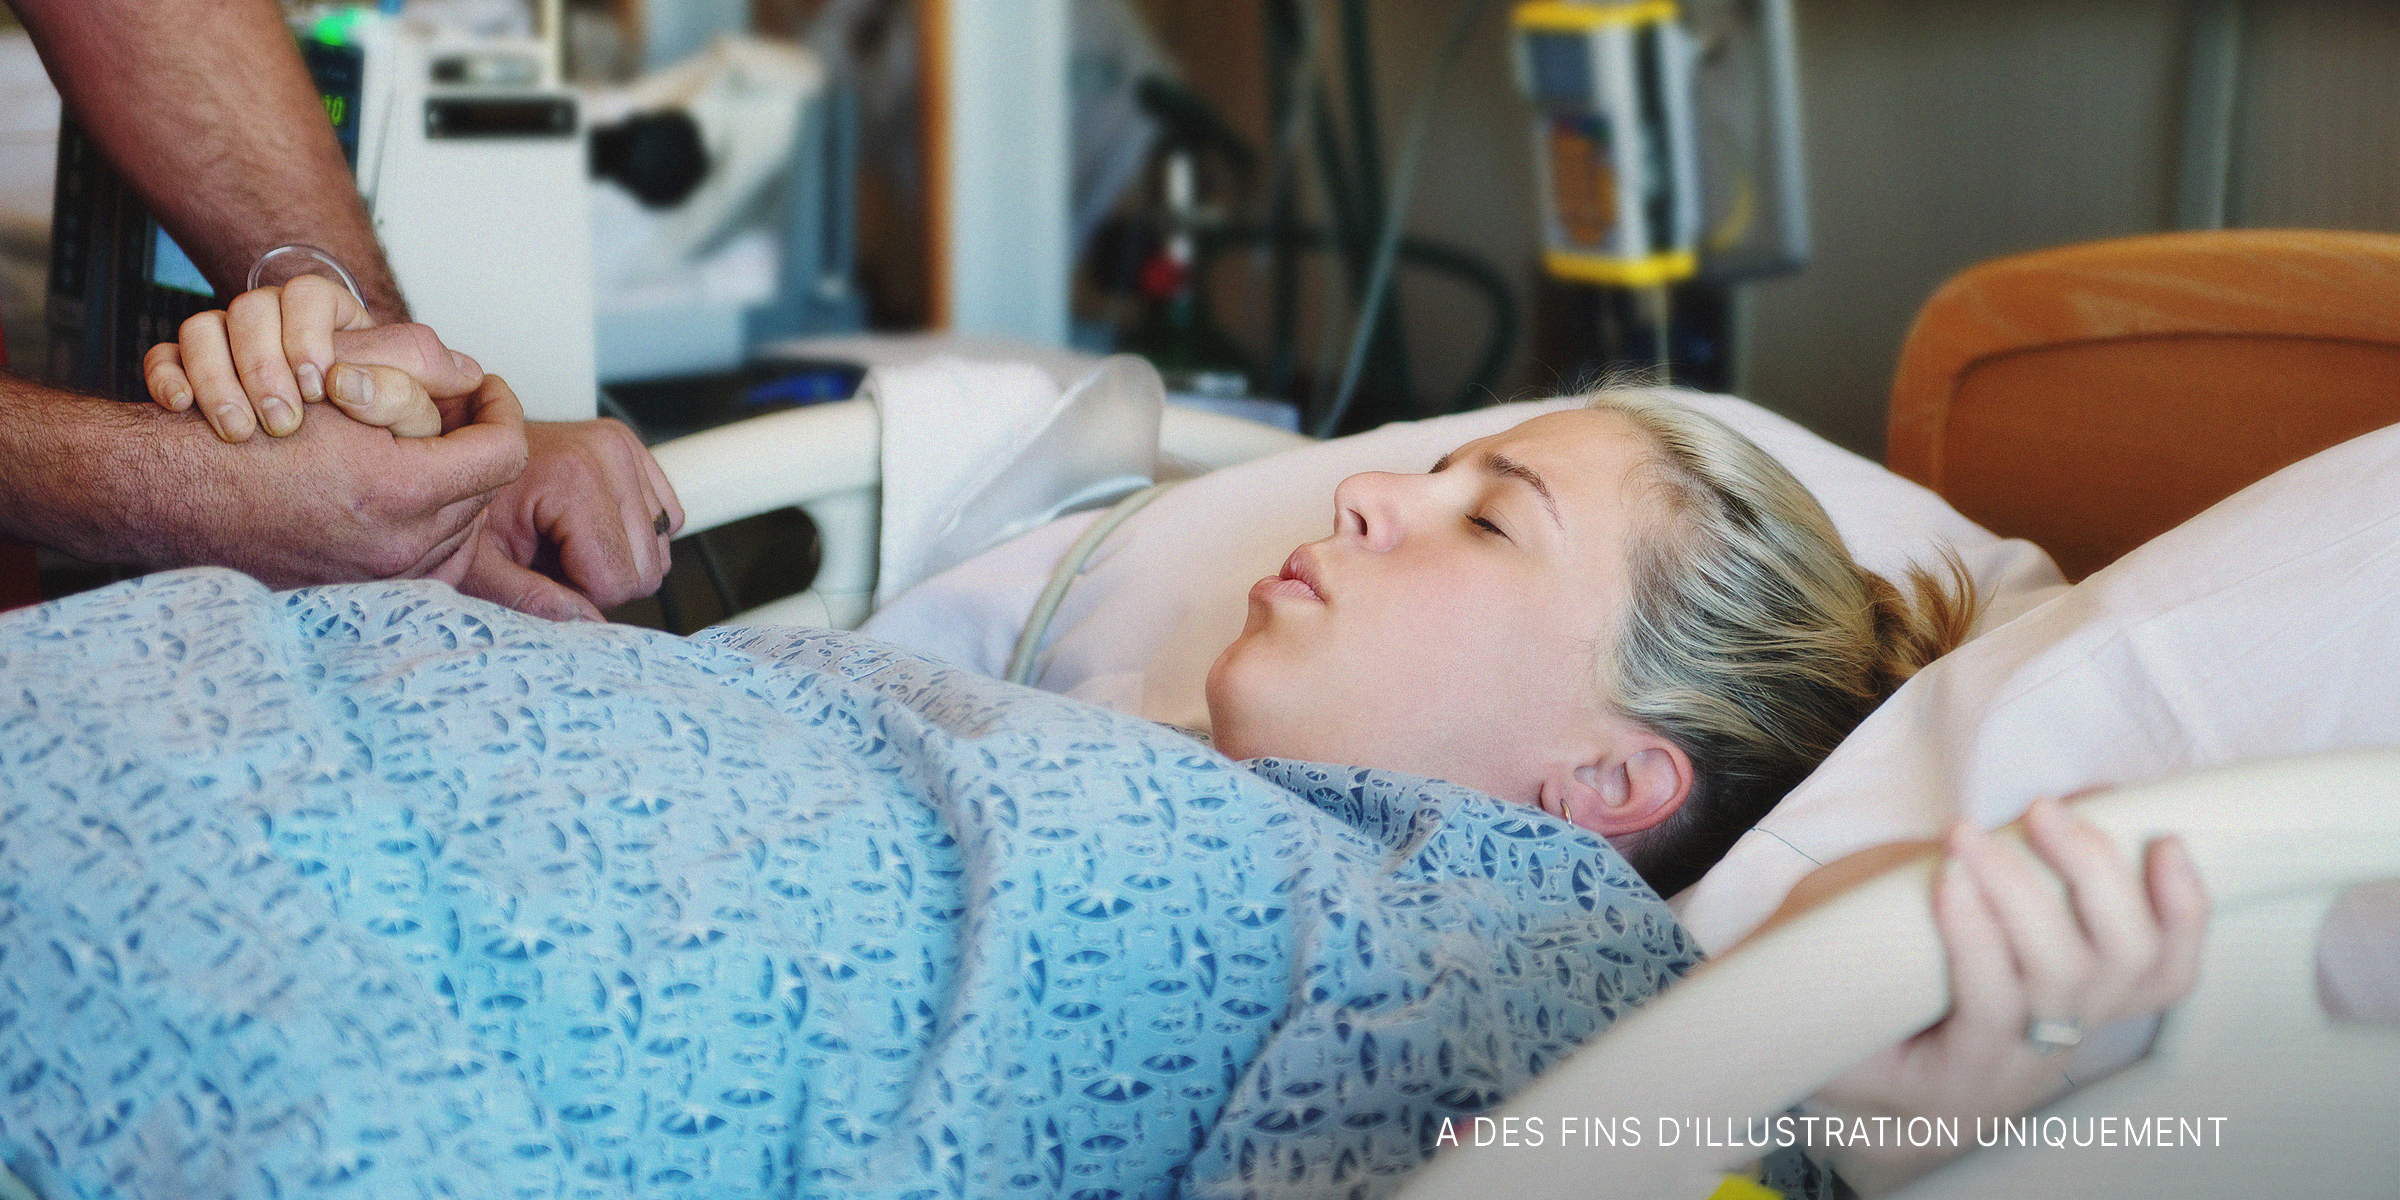 Une femme enceinte sur un lit d'hôpital | Source : Getty Images